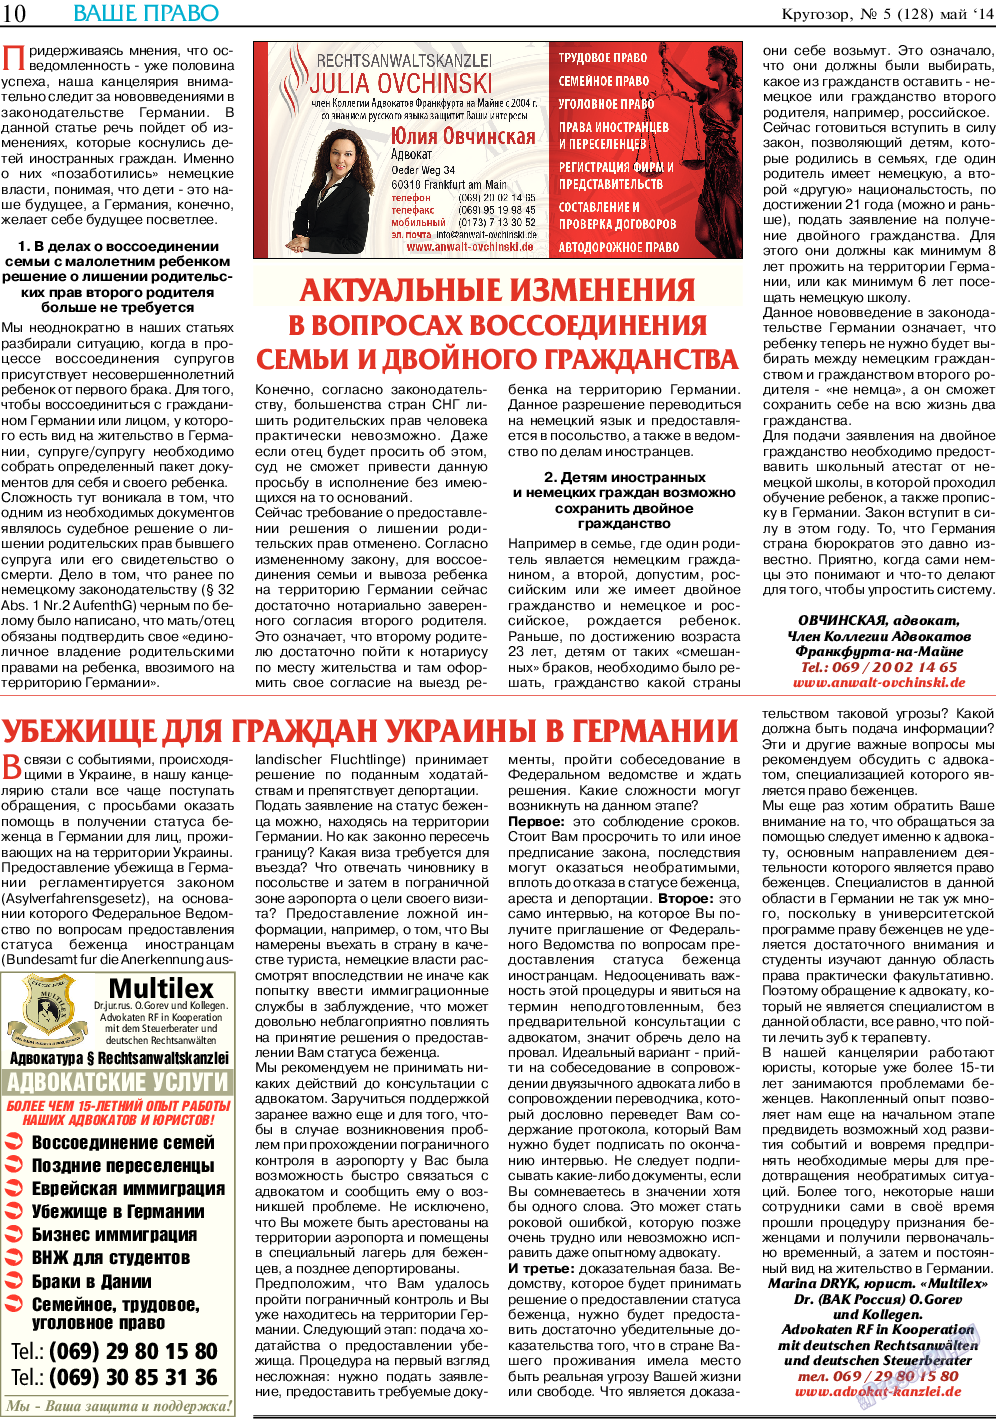 Кругозор, газета. 2014 №5 стр.10